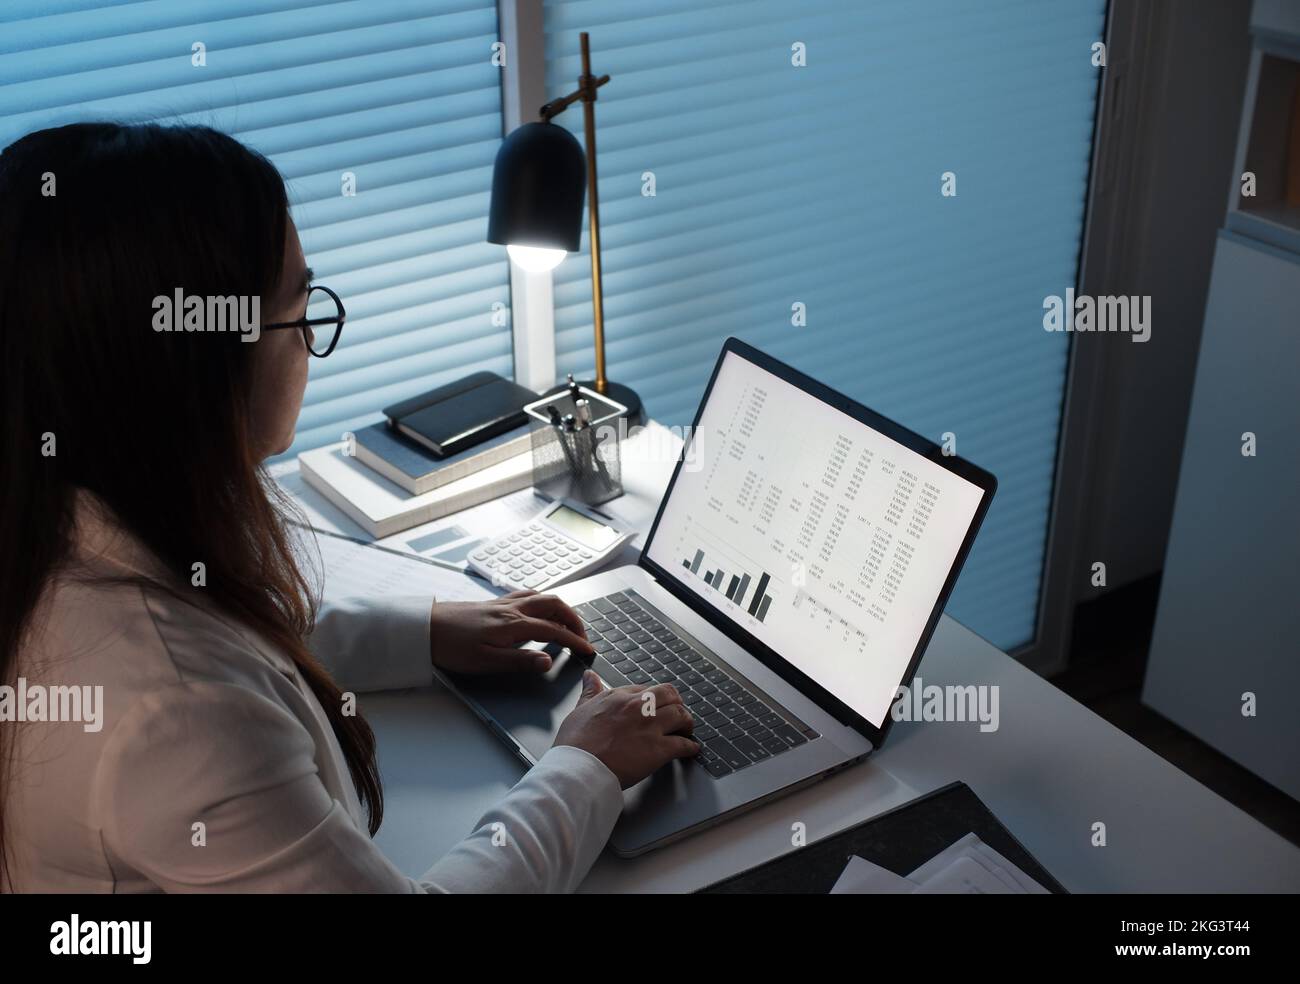 Jeunes femmes asiatiques travaillant tard dans la nuit dans une pièce sombre, utilisant un ordinateur portable. Banque D'Images